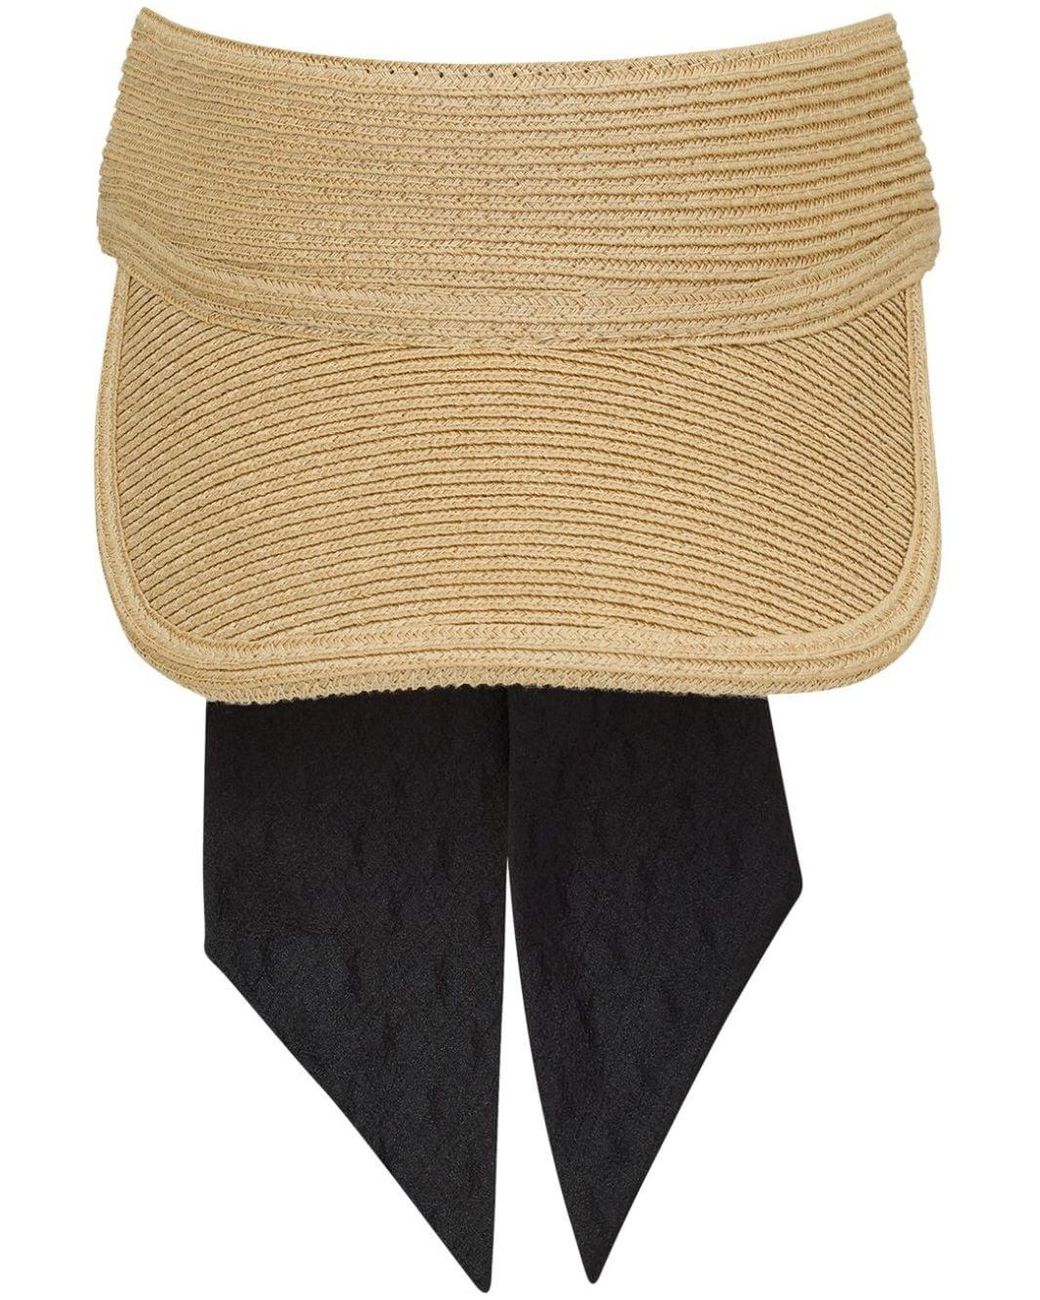 Casquette tweed hat - Saint Laurent - Women